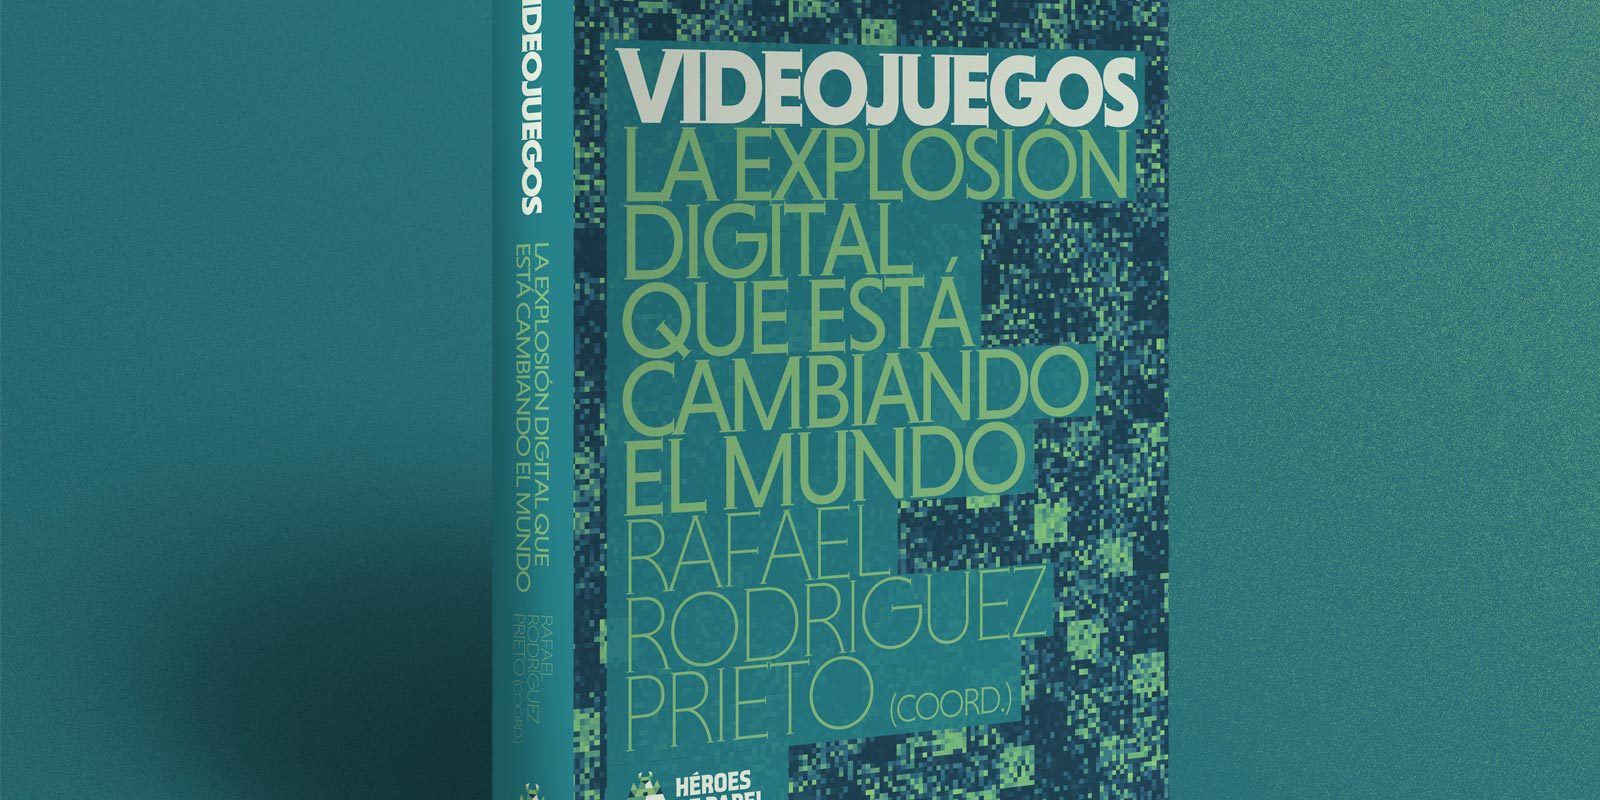 Héroes de Papel anuncia 'Videojuegos. La explosión digital que está cambiando el mundo', su décimo libro